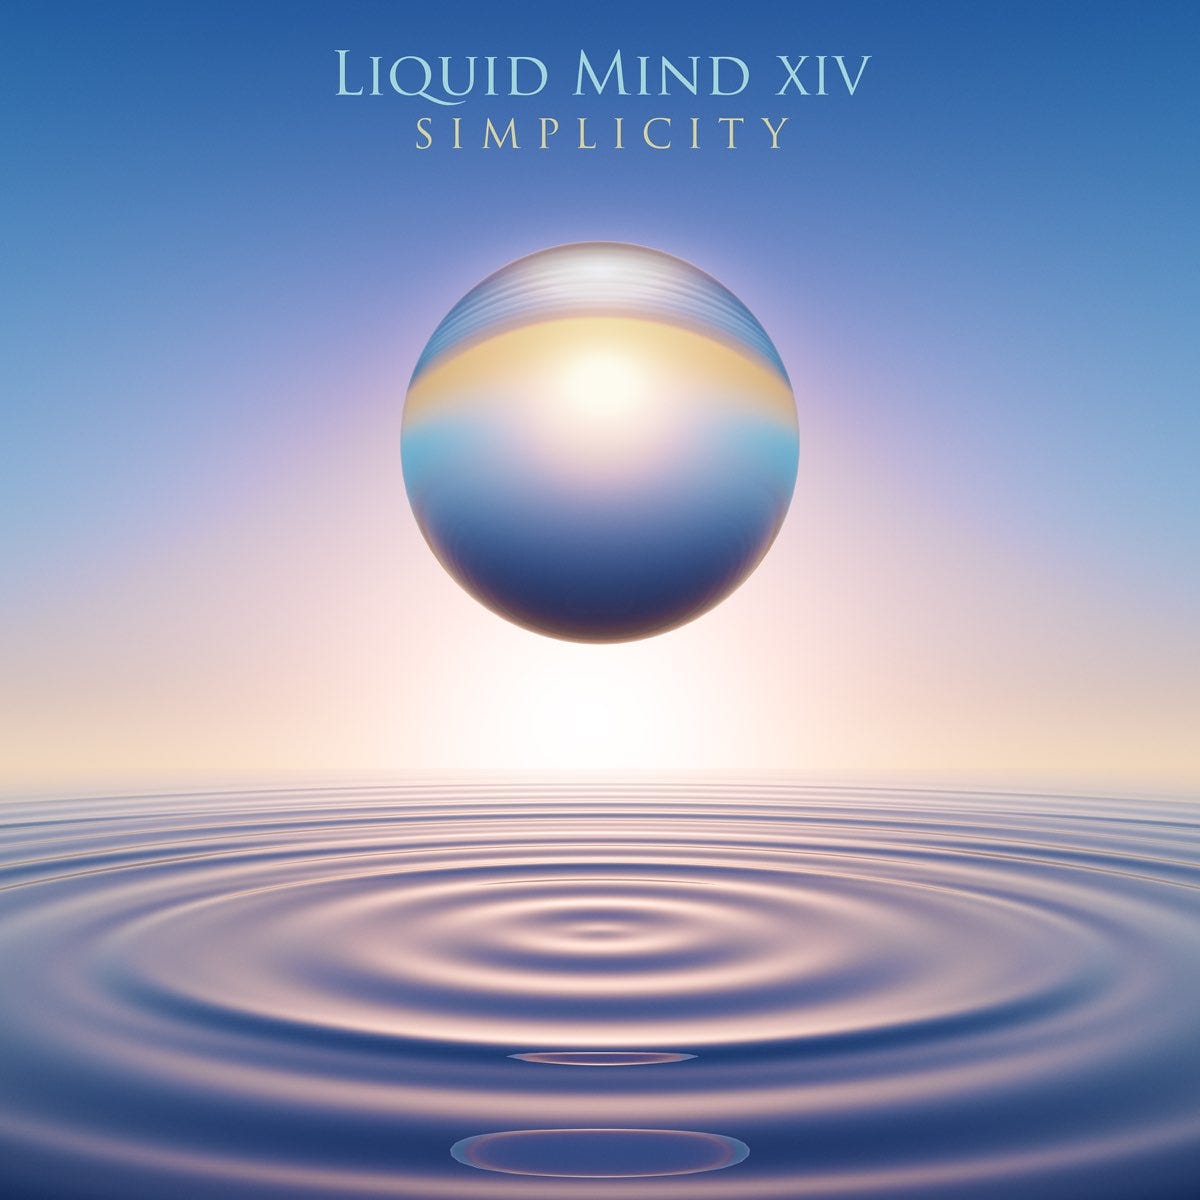 Liquid Mind XIV: Simplicity by Liquid Mind on Apple Music